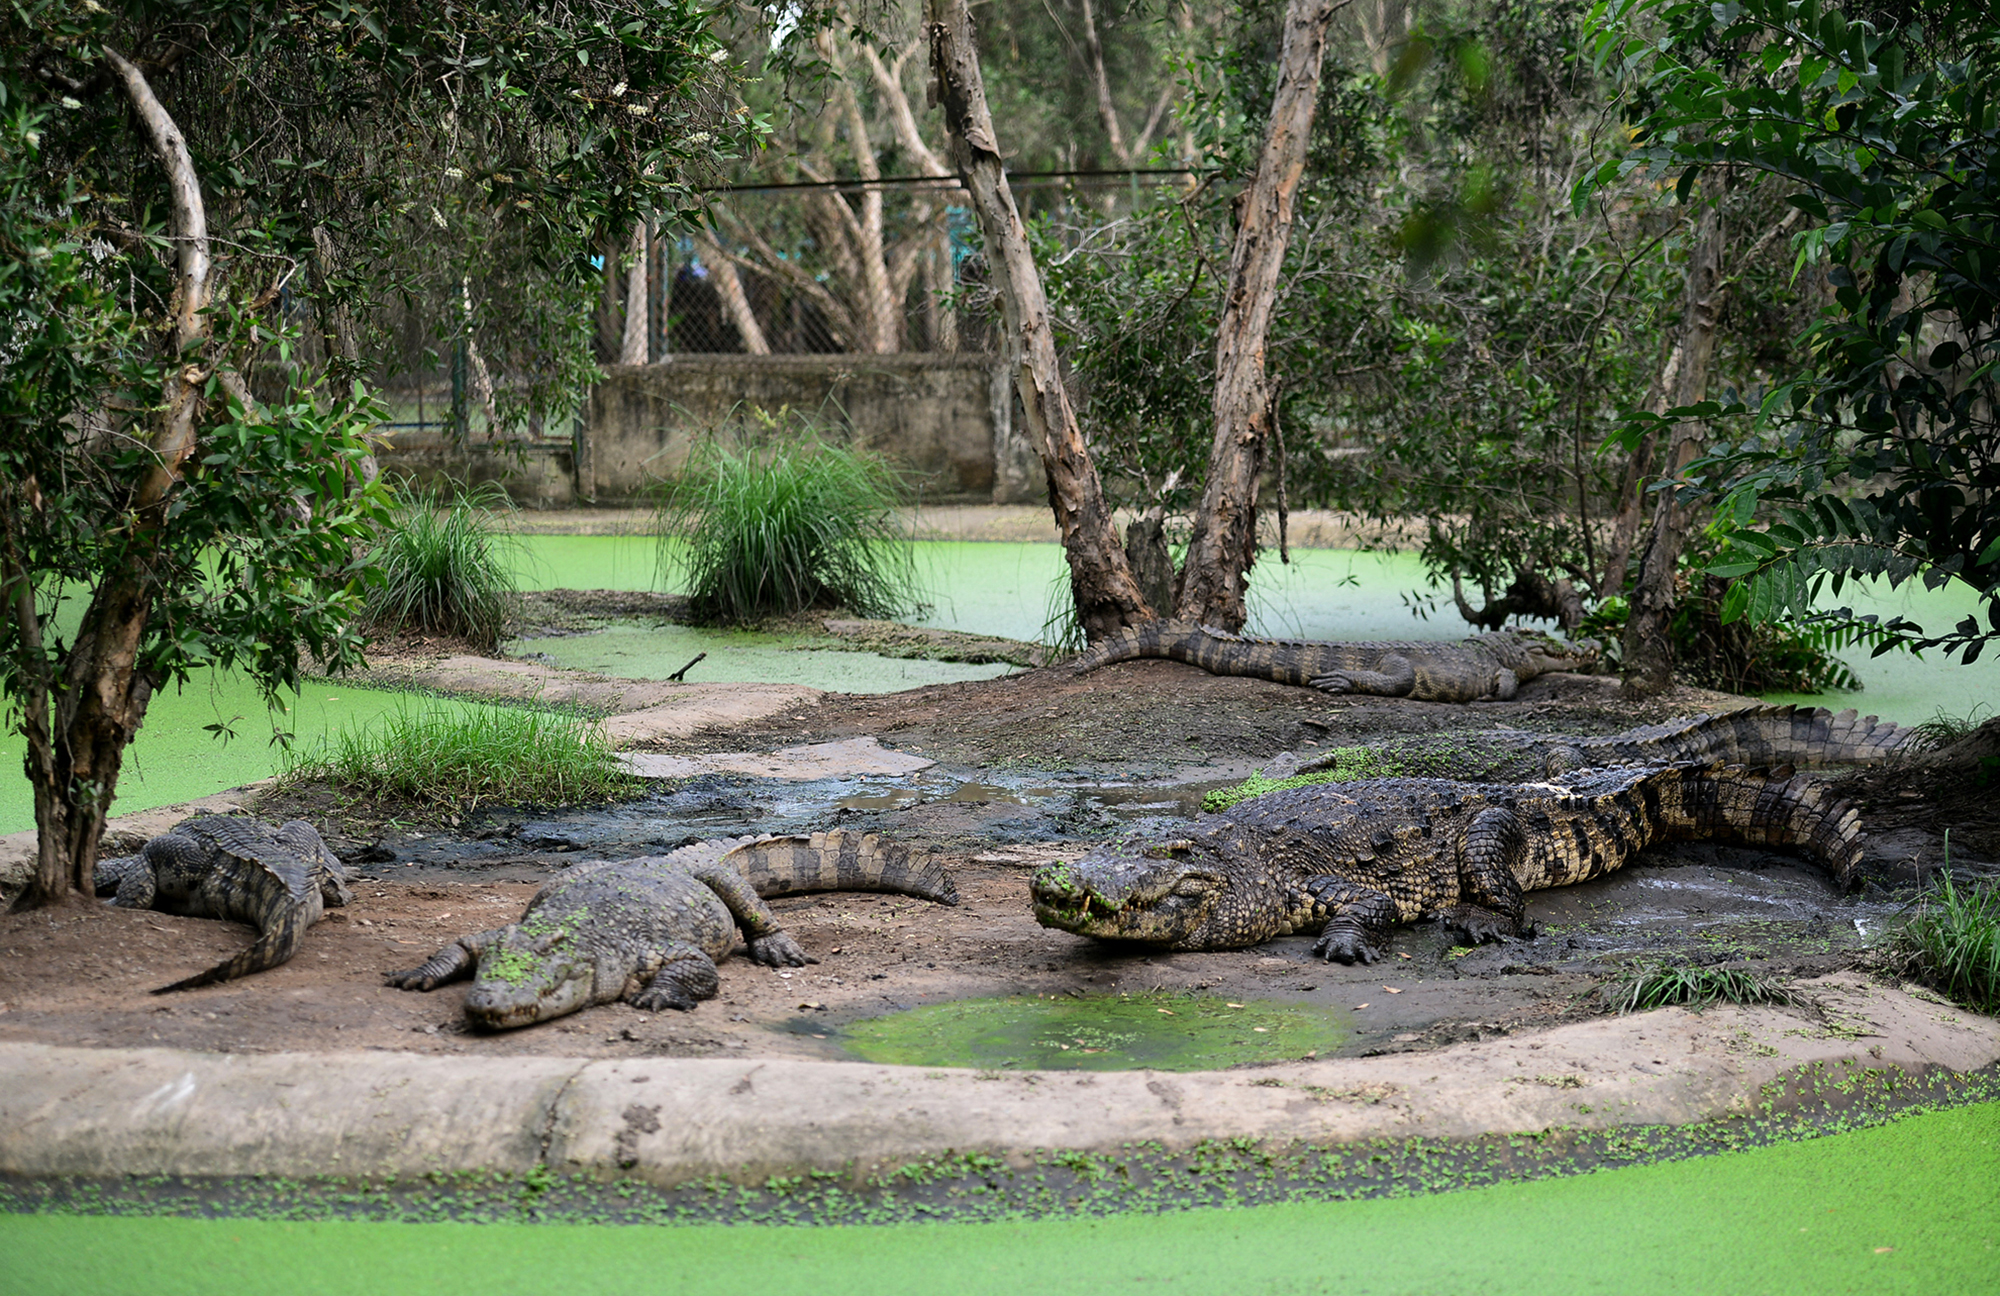 
Trang trại cá sấu với khuôn viên rộng 8.000m2 tại phường Thạnh Lộc, quận 12, TP.HCM nhiều năm nay đang nuôi gần 200 con cá sấu&nbsp;từ 20 đến gần 40 tuổi.&nbsp;Số cá này được nuôi tại 5 chuồng lớn, thiết kế đảo như một đầm lầy giống môi trường tự nhiên.